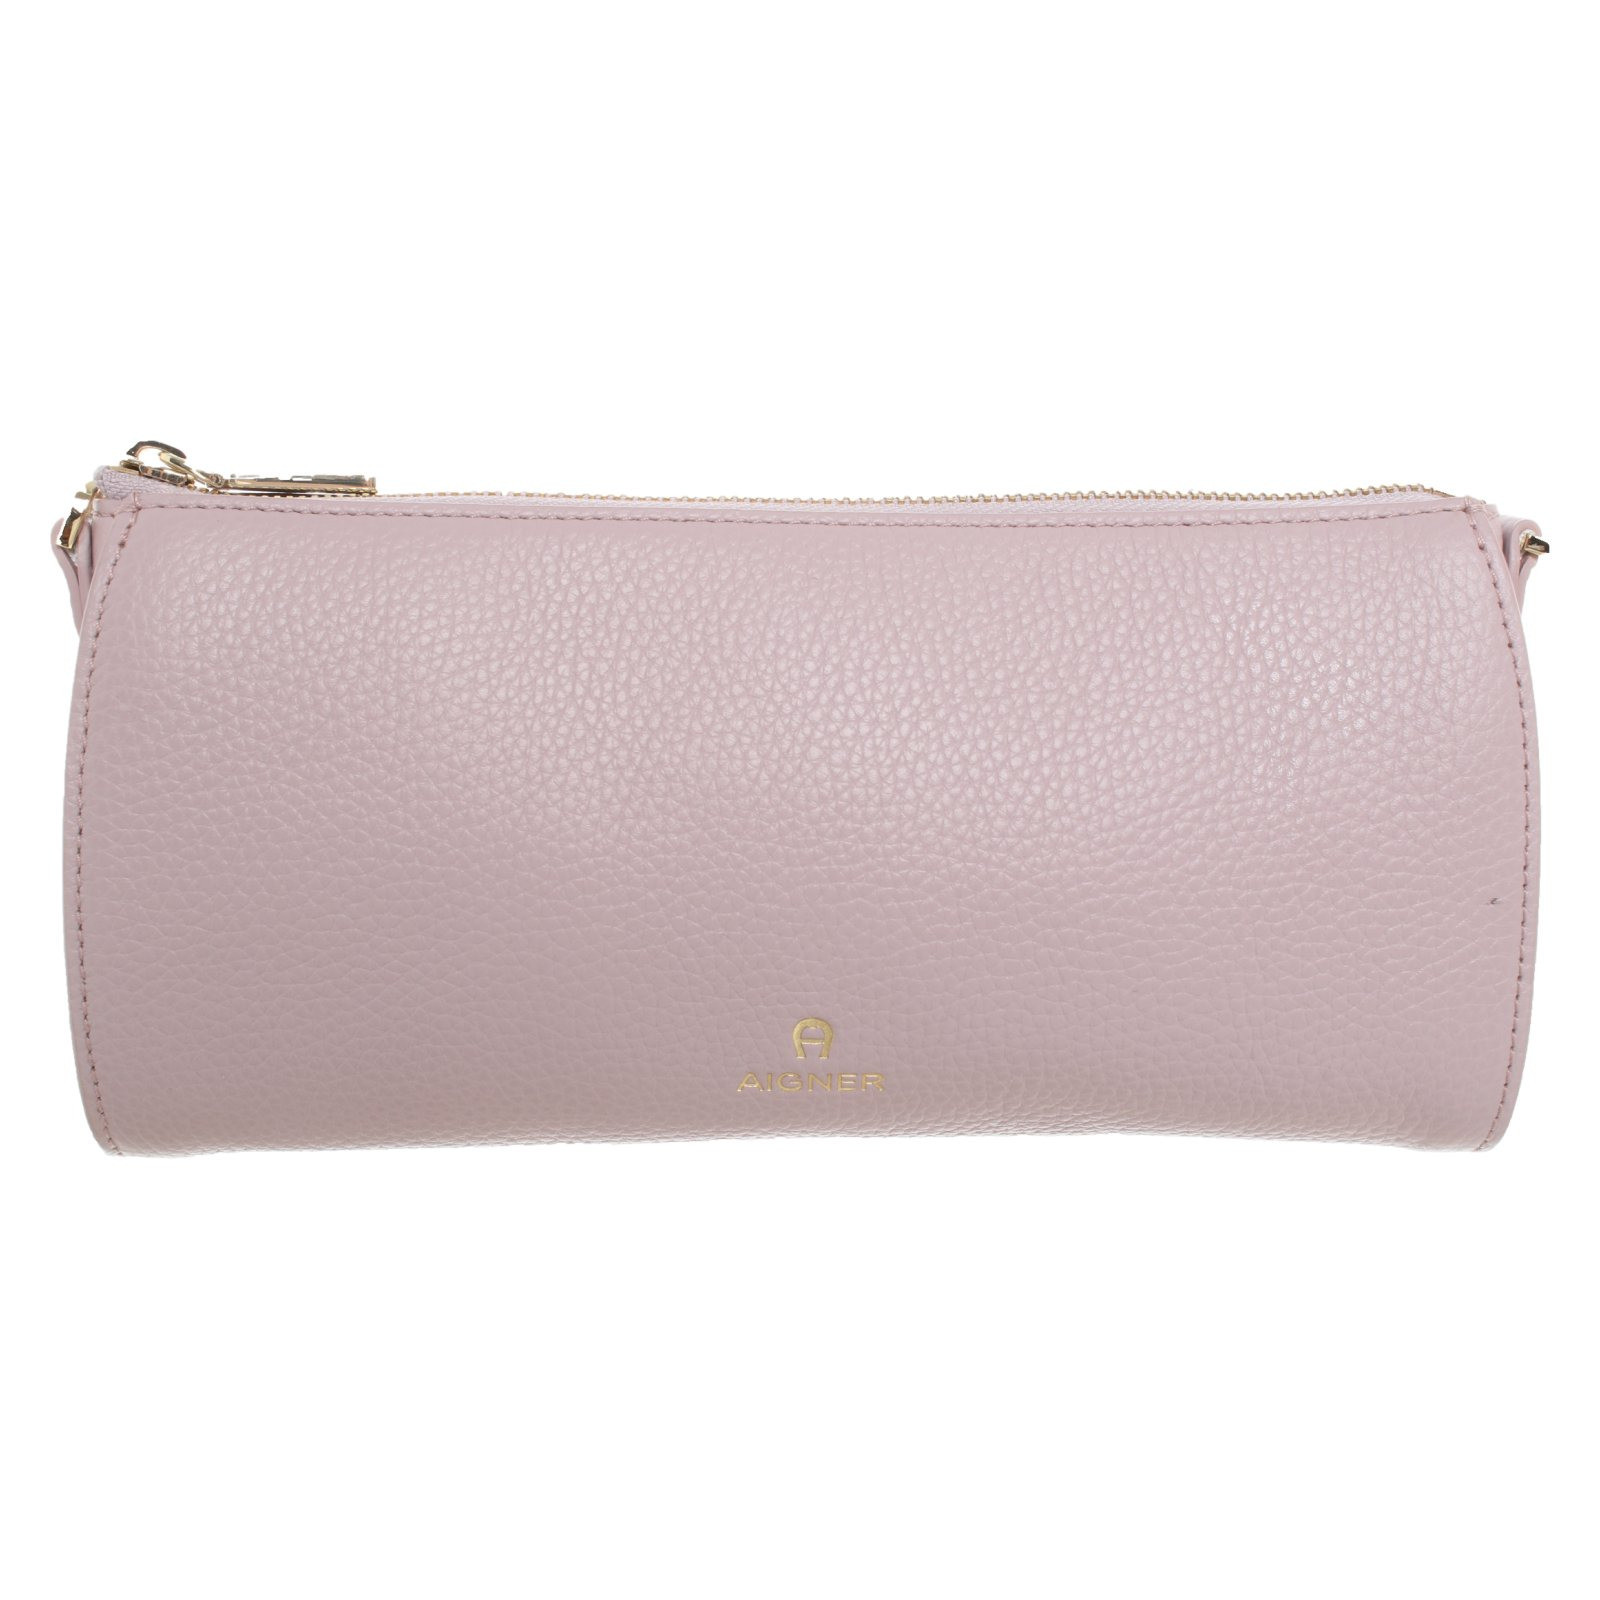 Fejlfri Sicilien Sindssyge Aigner Clutch Bag Leather in Pink - Second Hand Aigner Clutch Bag Leather  in Pink buy used for 169€ (6953963)